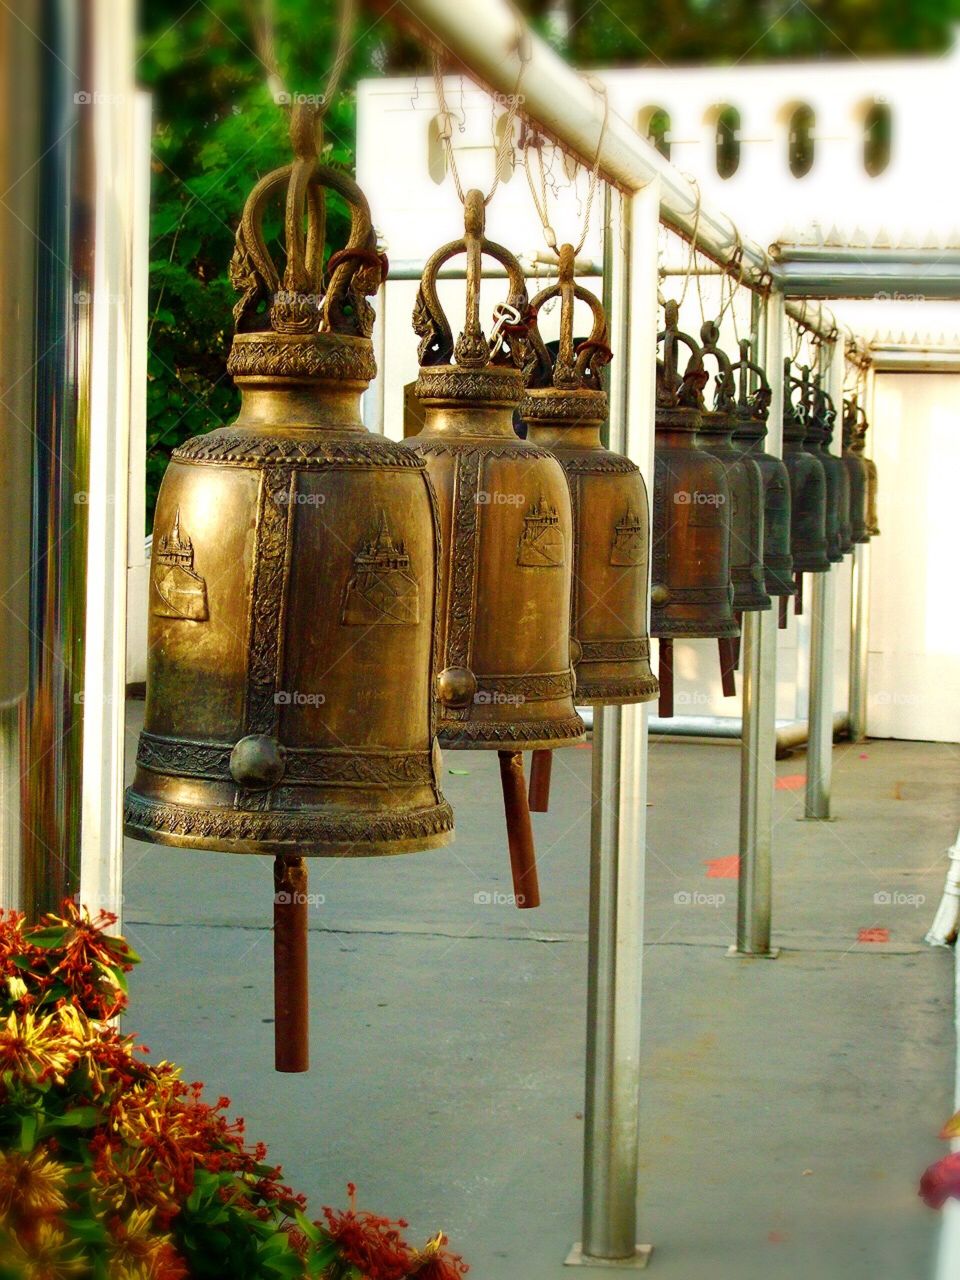 Bells 